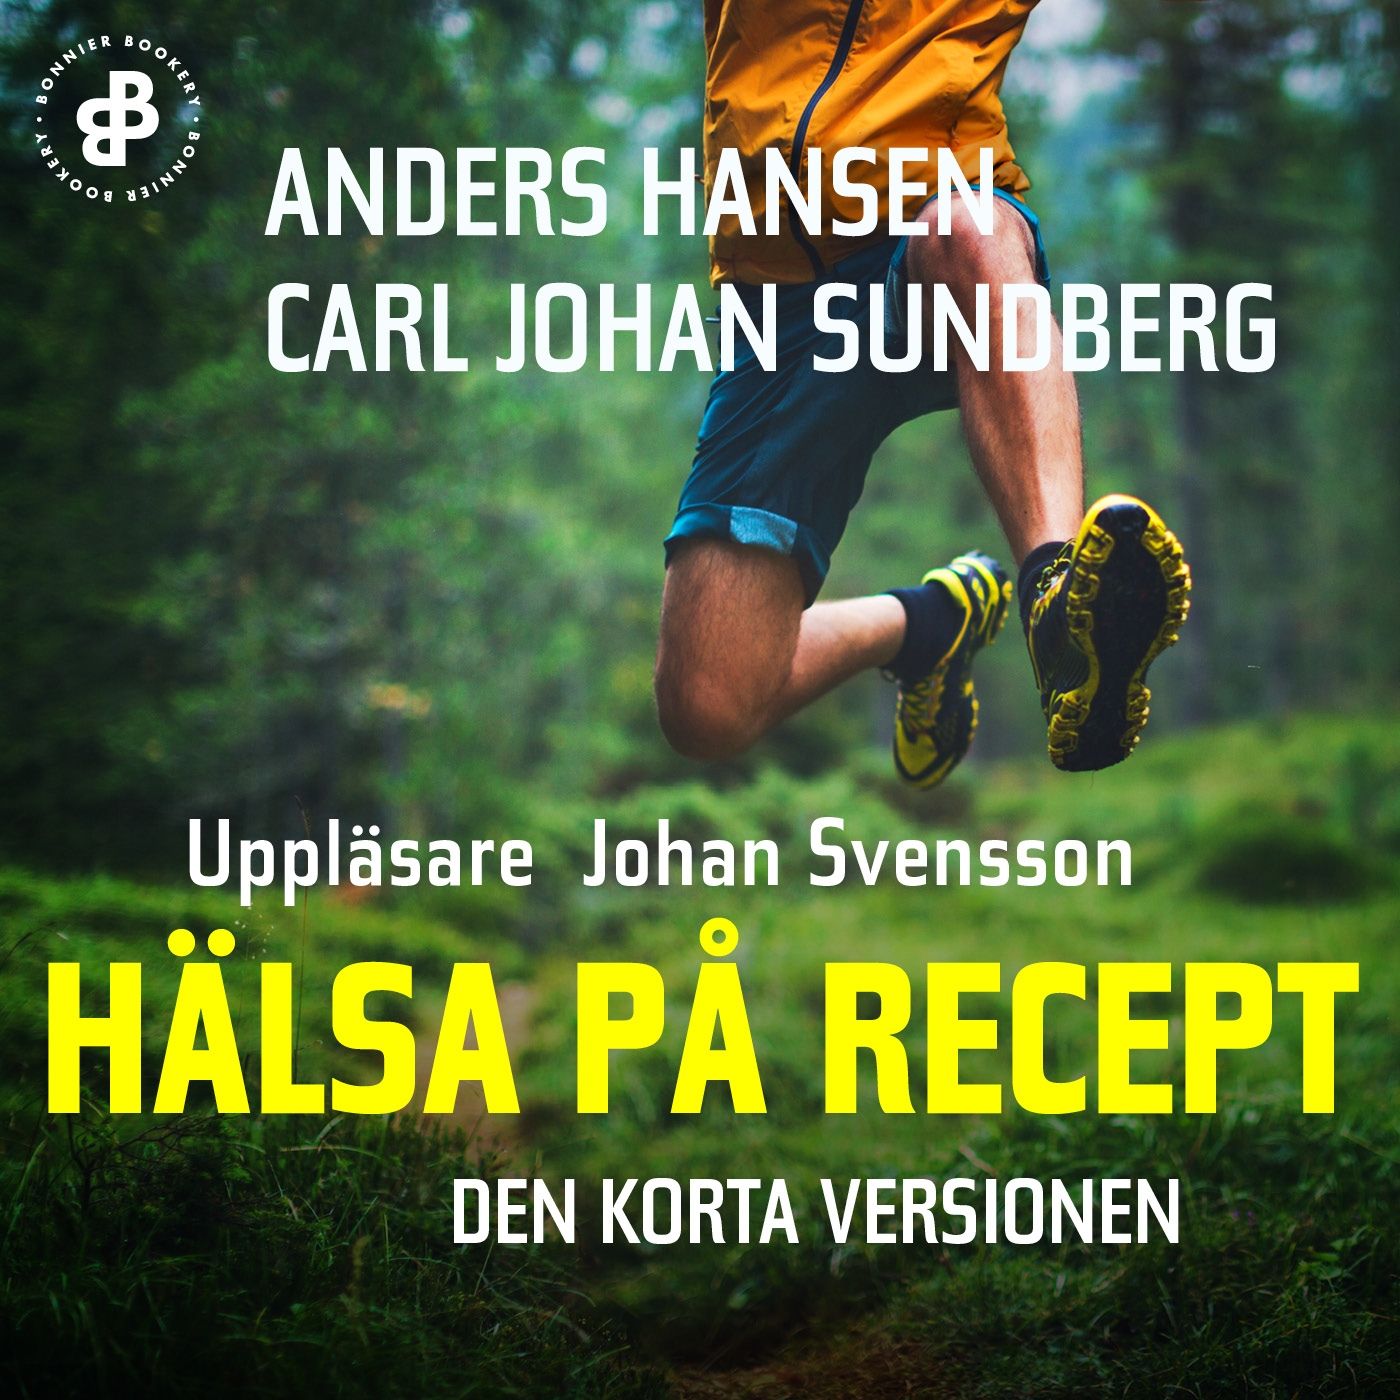 Hälsa på recept. Den korta versionen, ljudbok av Anders Hansen, Carl Johan Sundberg